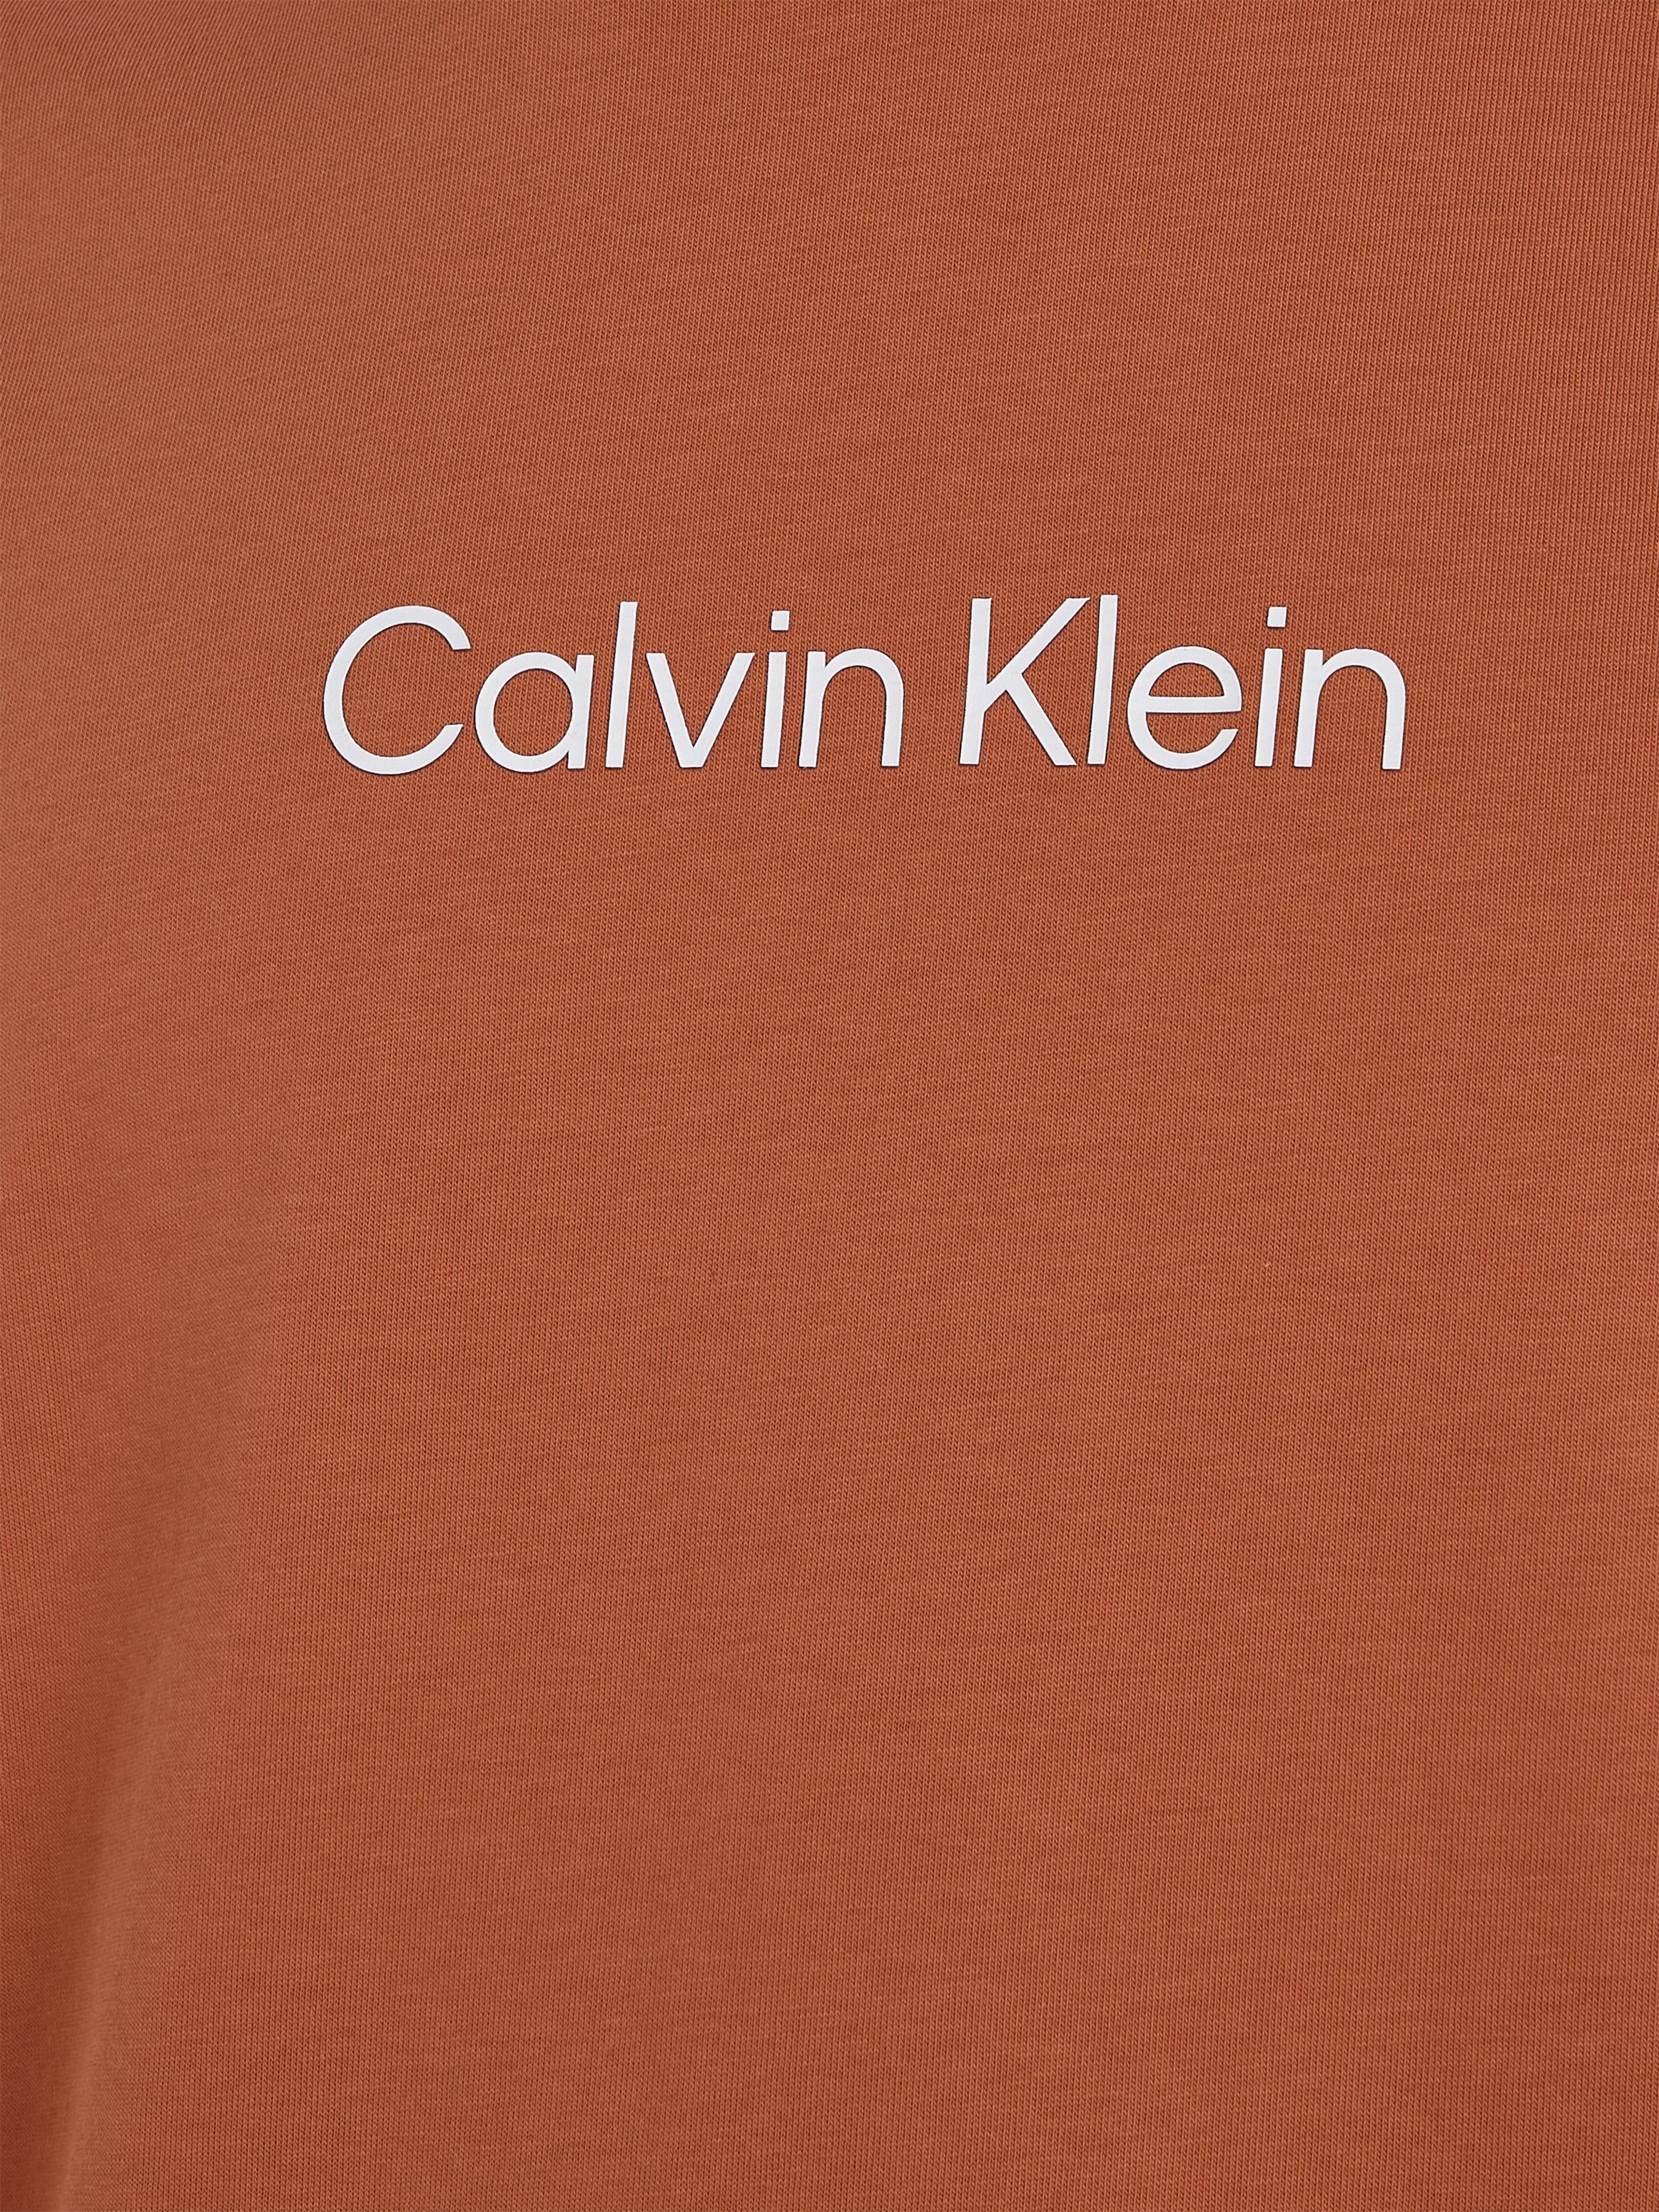 Calvin Klein T-Shirt HERO LOGO COMFORT Markenlabel T-SHIRT Sun Copper aufgedrucktem mit